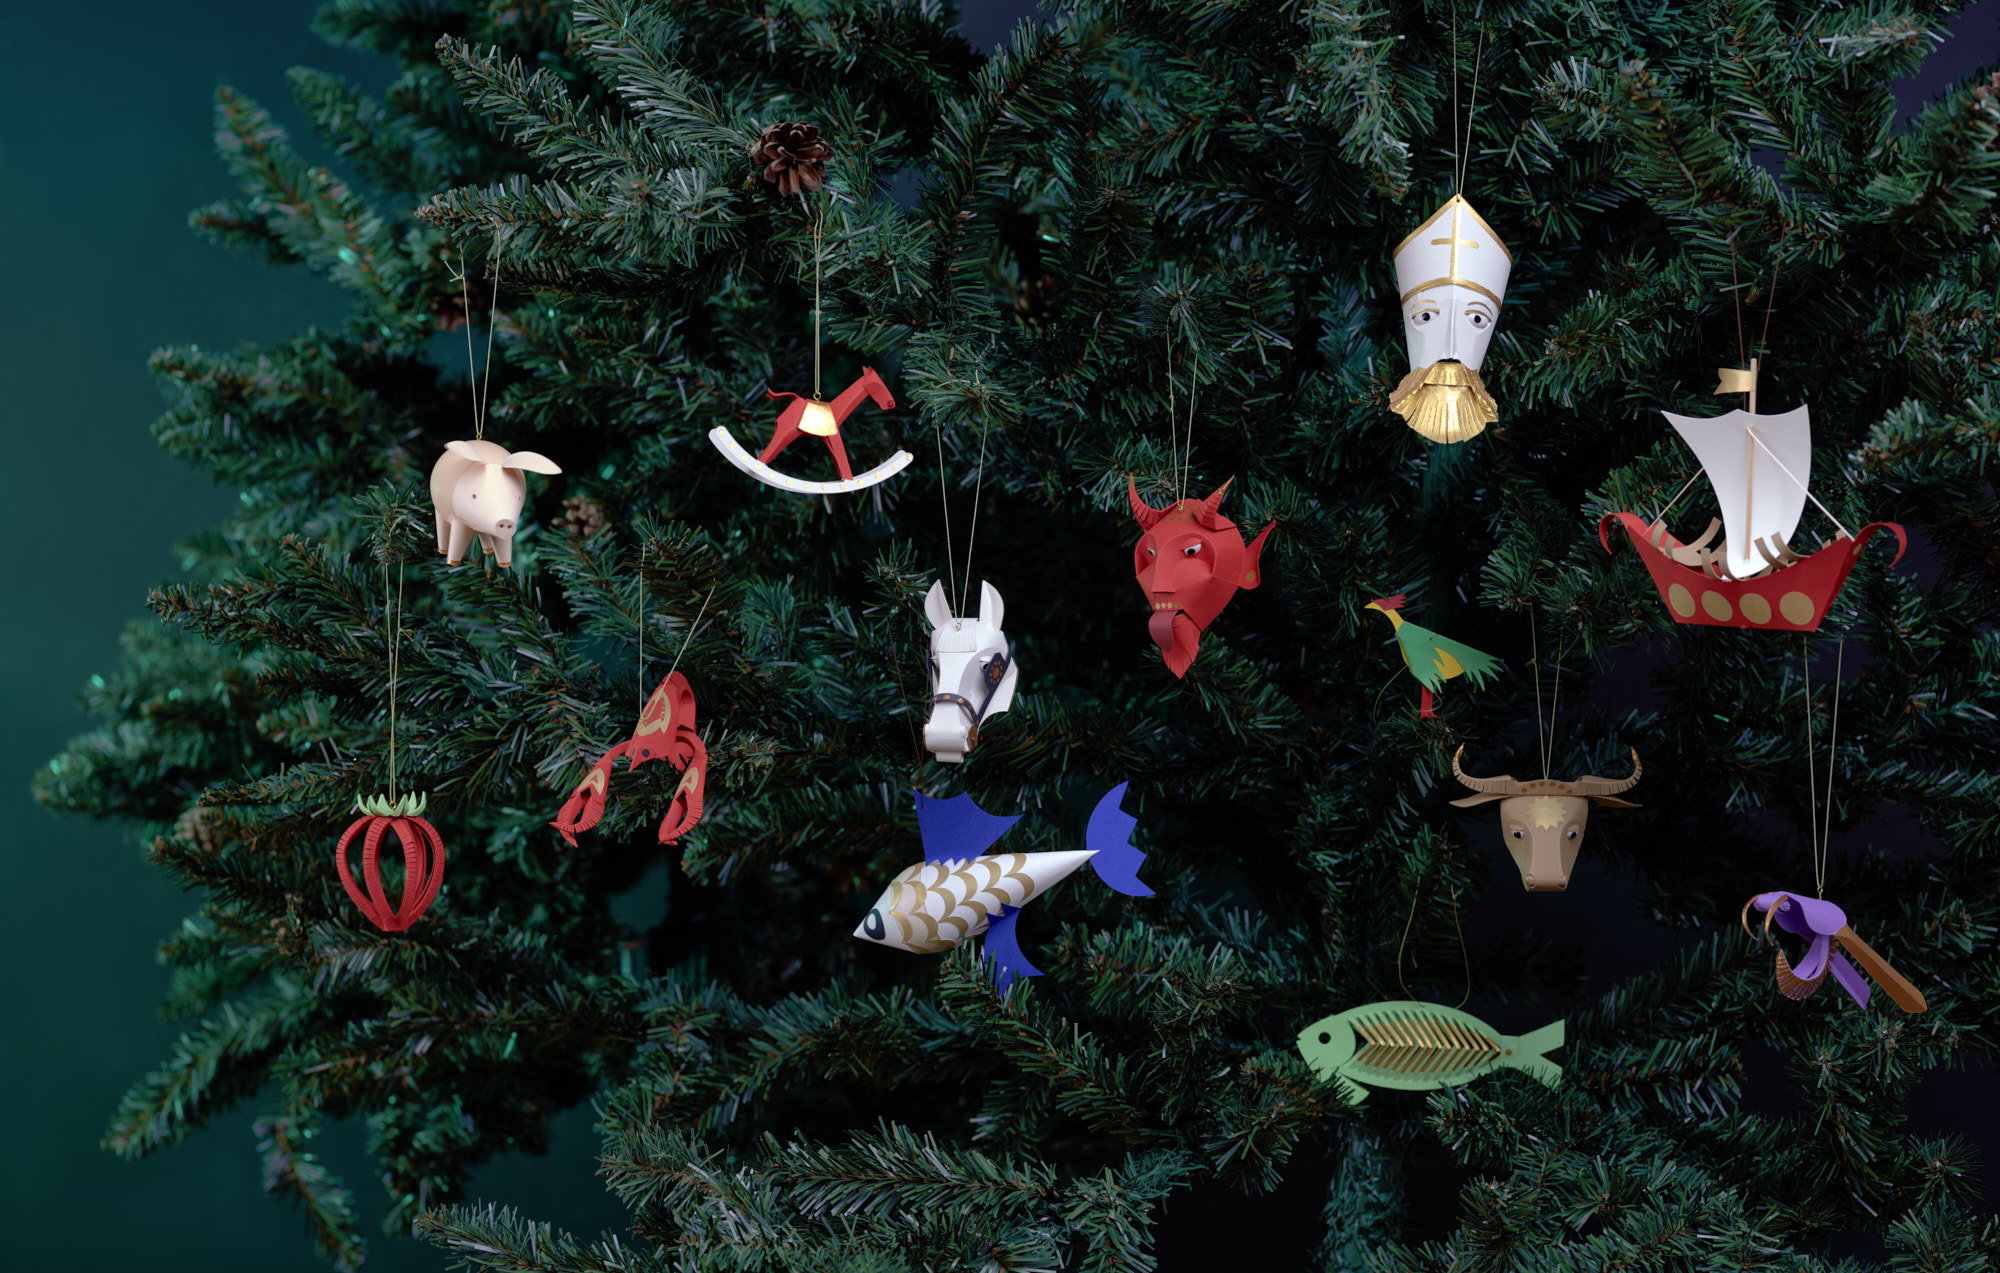 Christmas-tree decorations from the Kraków Workshops (1913 – 1926). Designs by Zdzisław Gedliczka. Artist’s recreations by Dr Anna Myczkowska-Szczerska based on original templates and surviving decorations. Image: Anna Olchawska & Tomasz Markowski